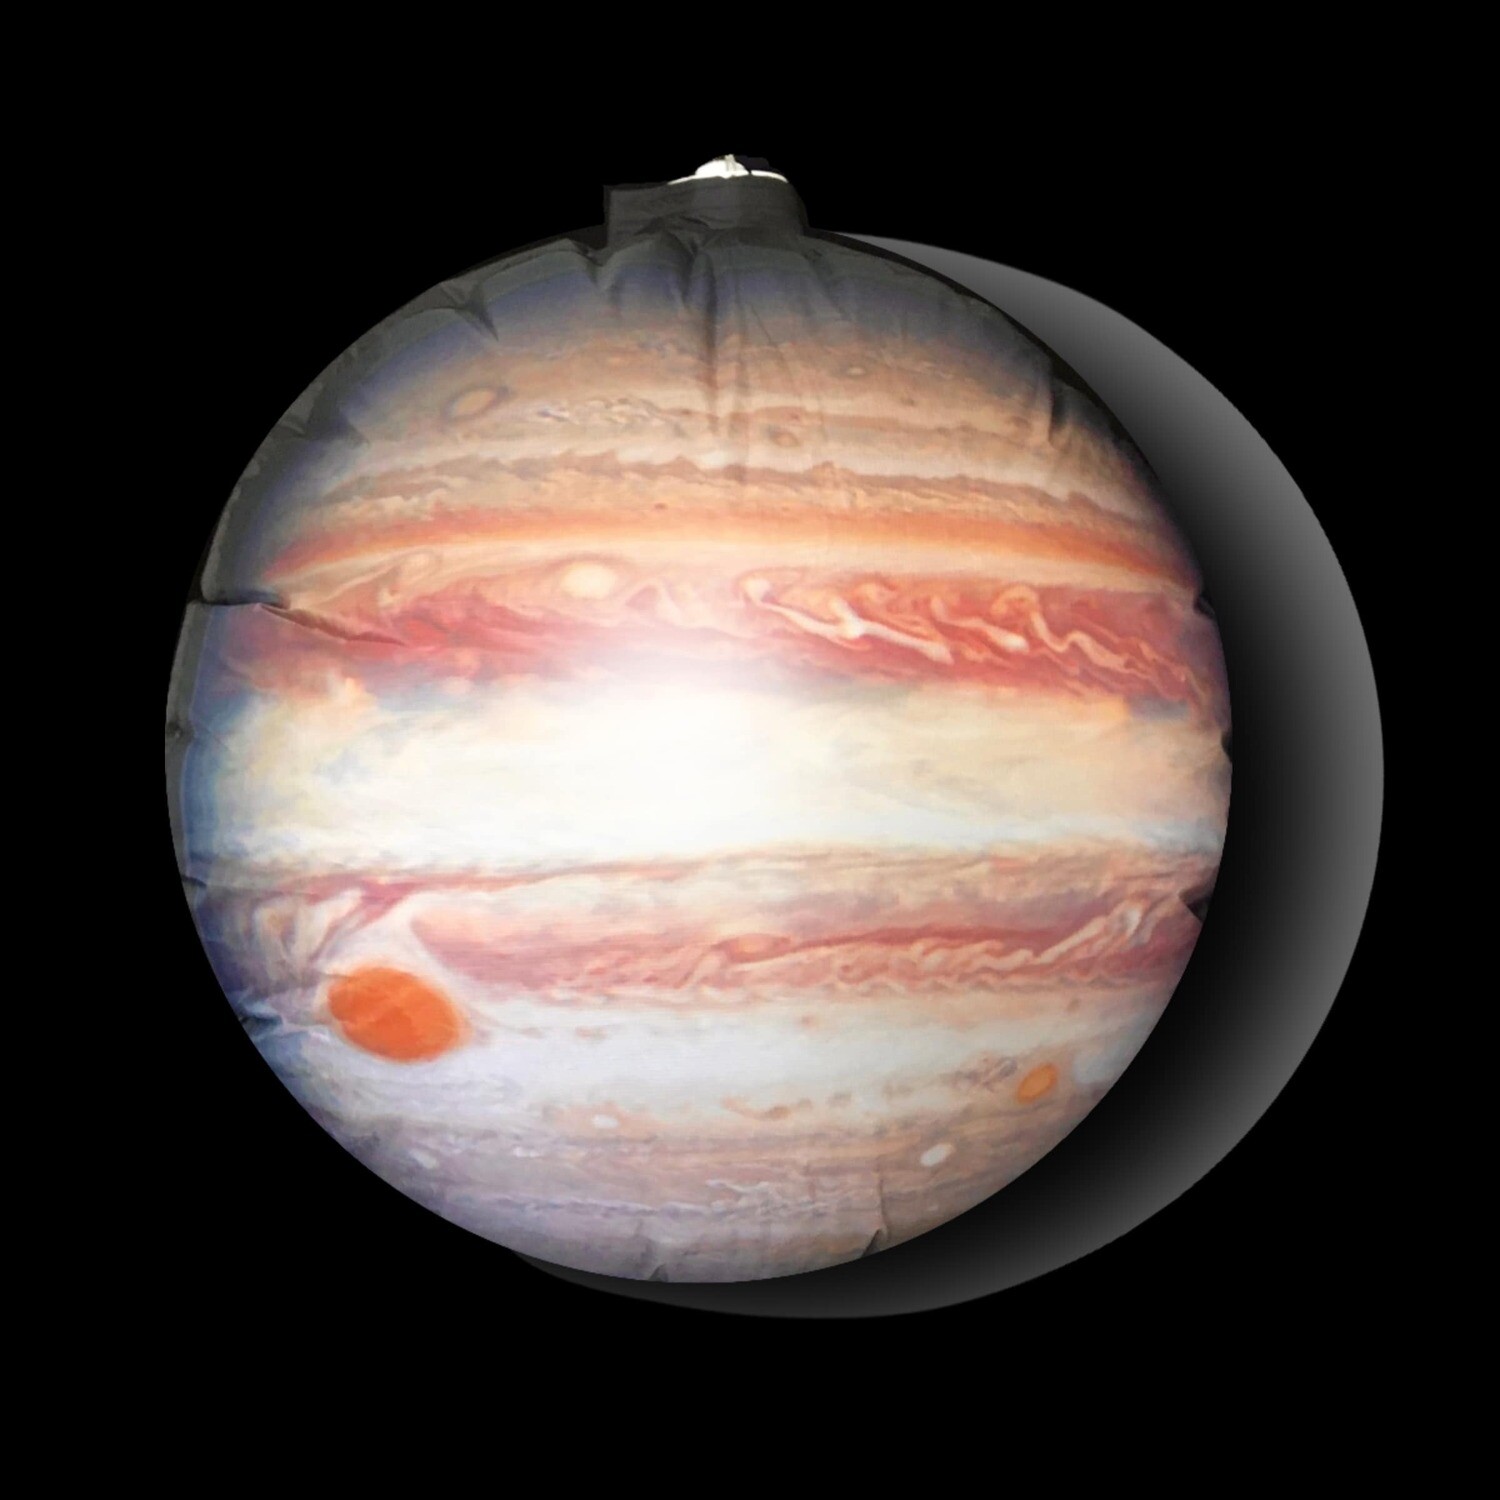 Hanging Inflatable Planet Jupiter 3ft/91cm x 3ft/91cm high